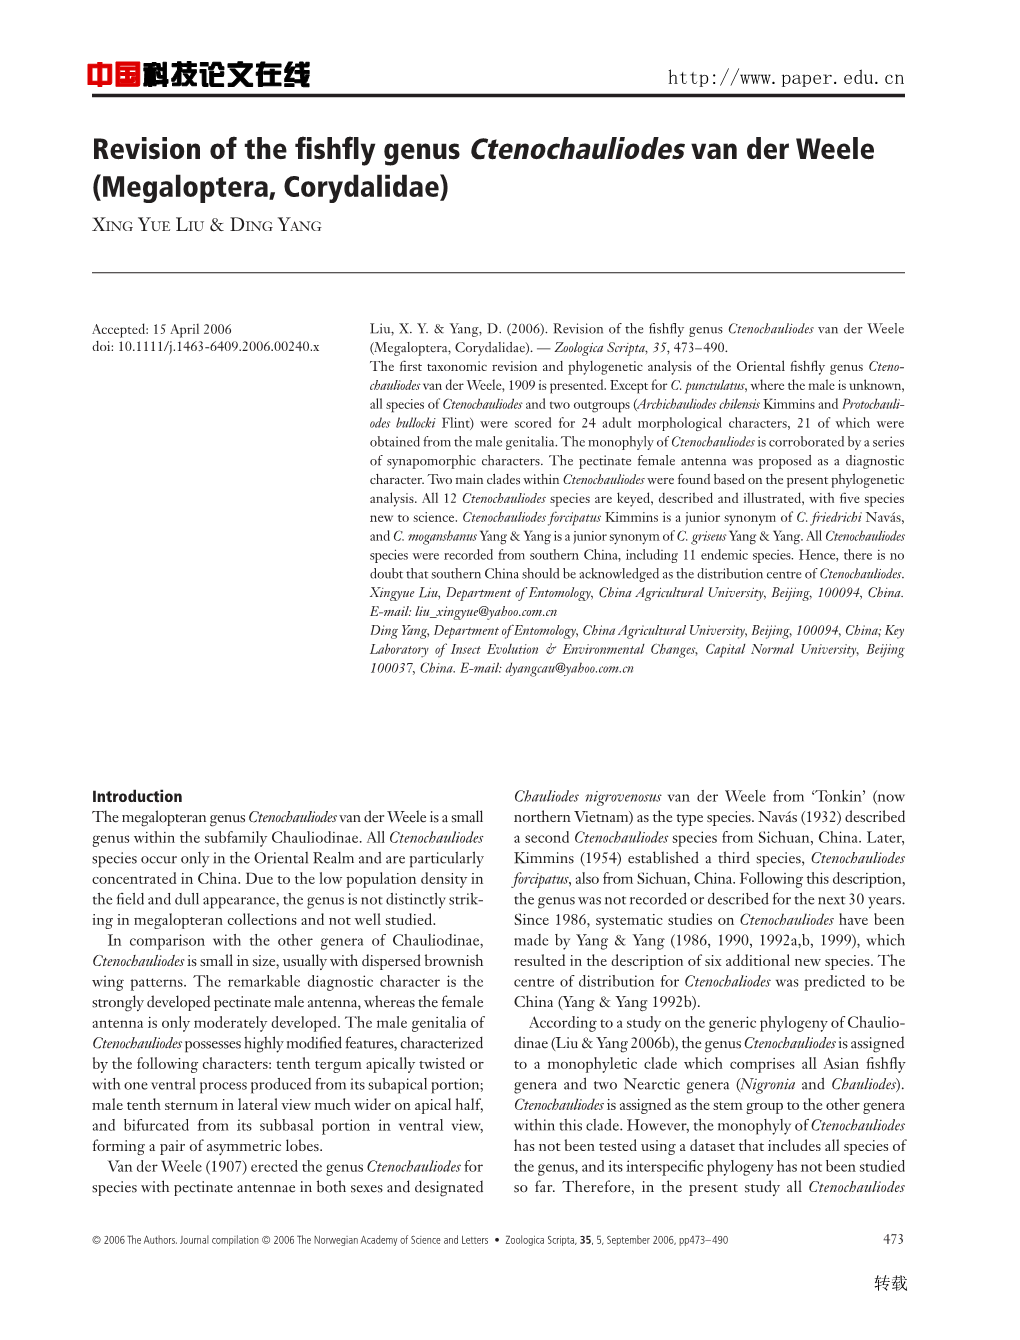 Revision of the Fishfly Genus Ctenochauliodes Van Der Weele